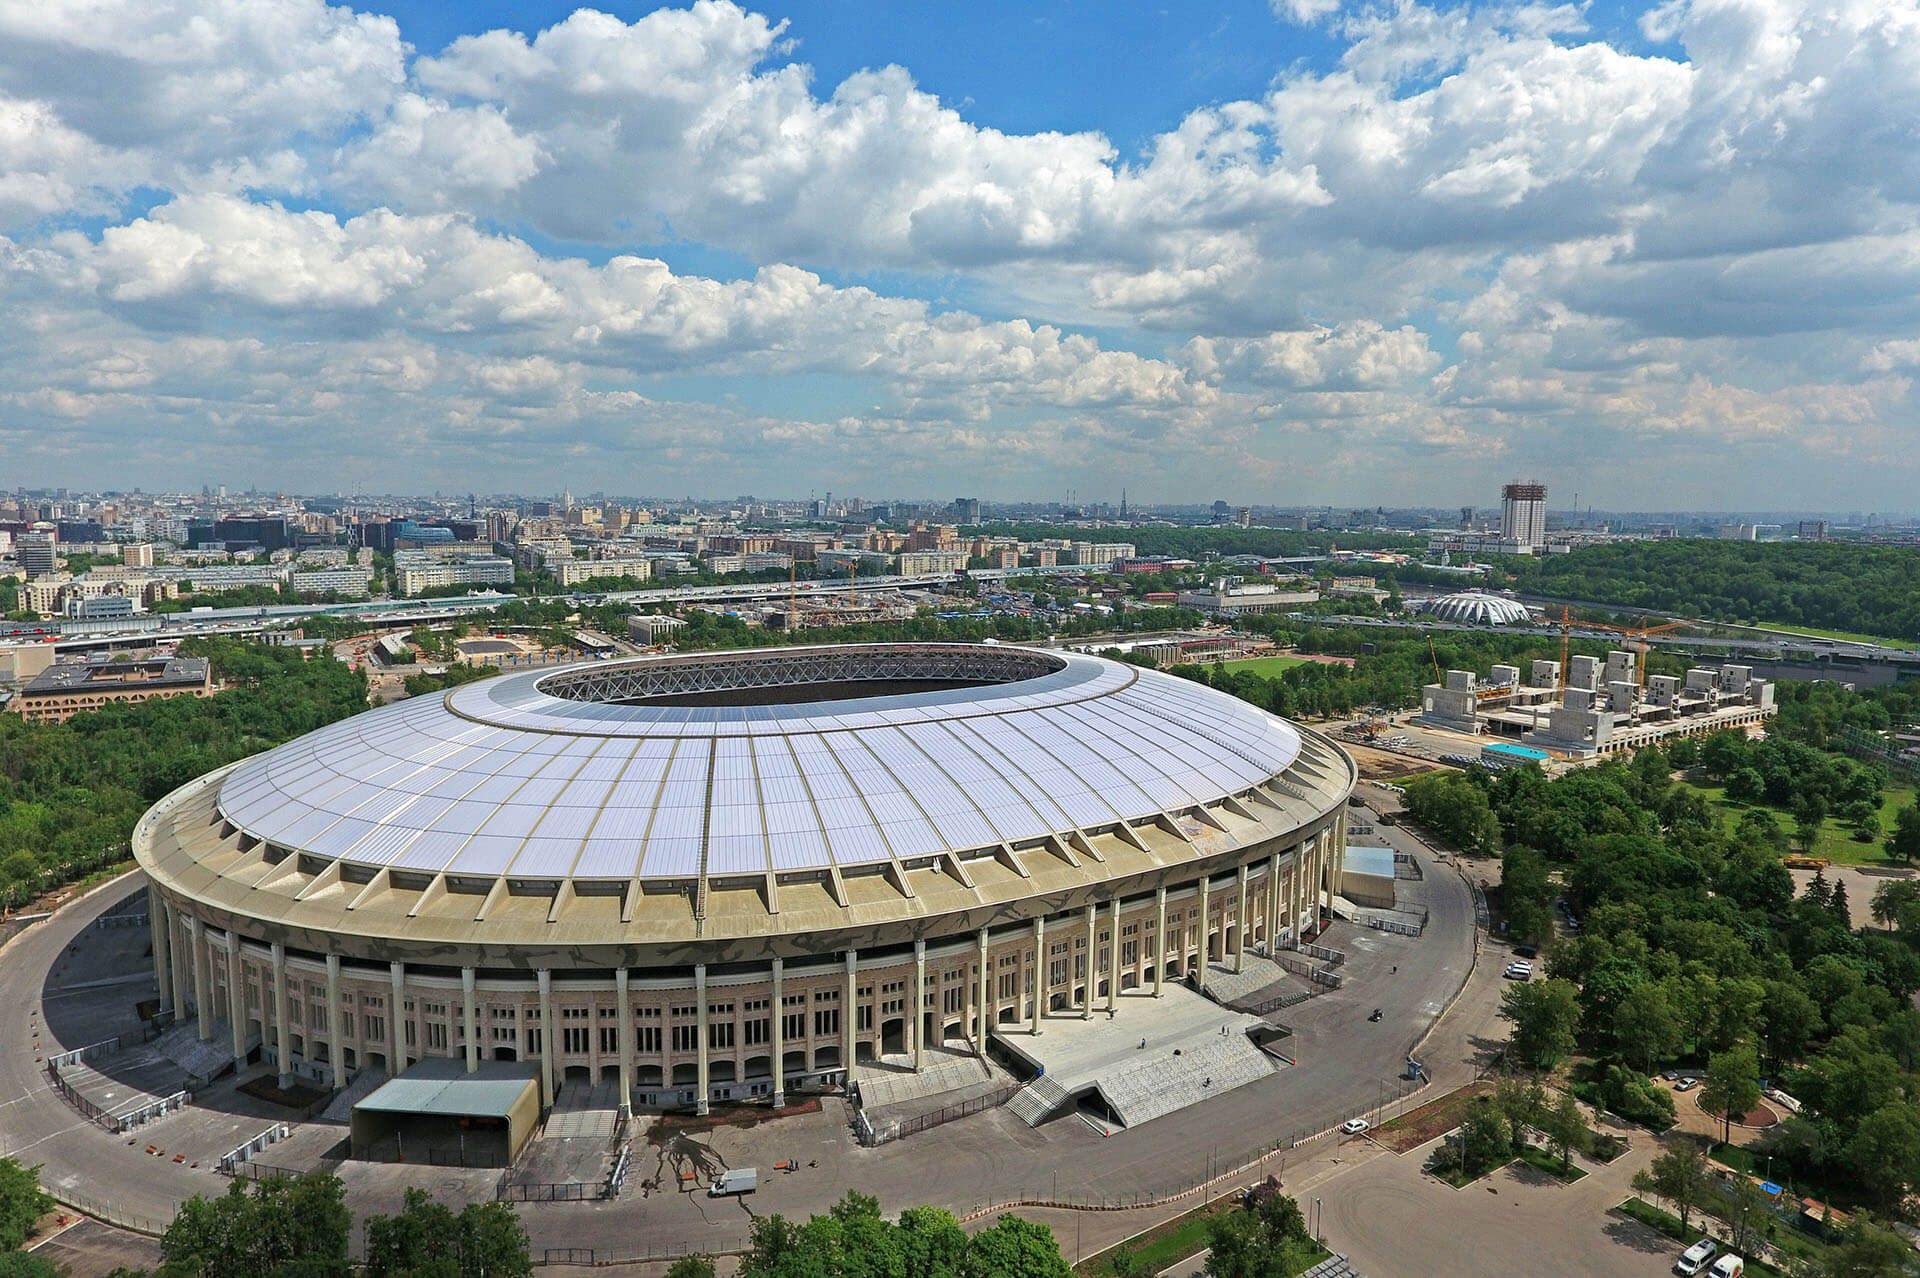 Luzhniki Stadium More Sports. More Architecture.